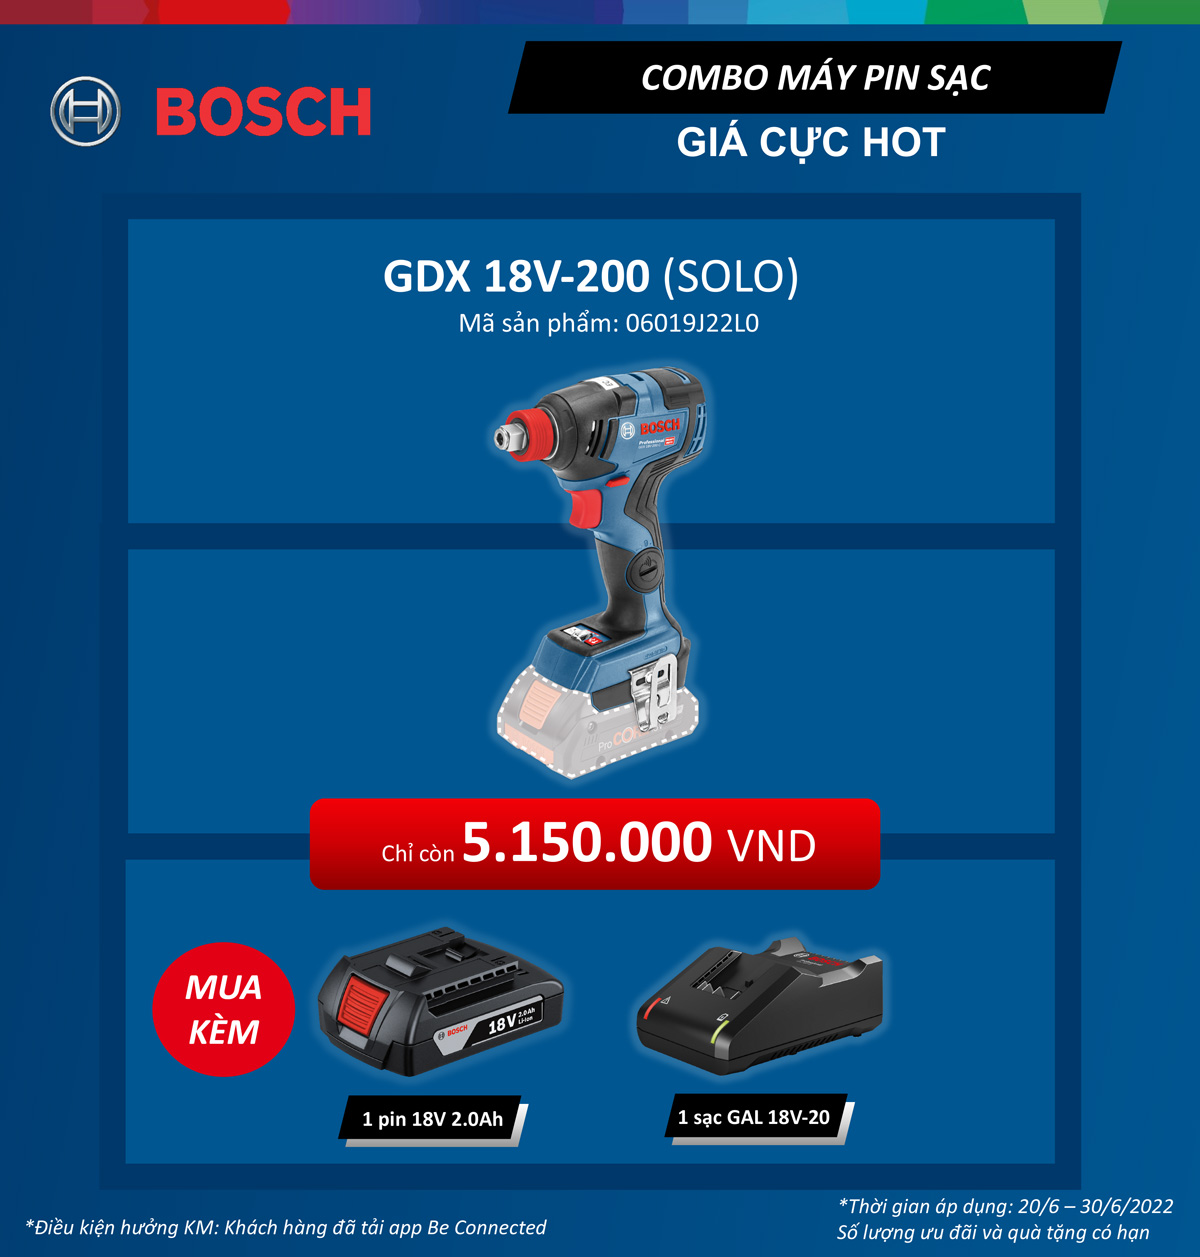 Mức giá ưu đãi khi mua máy vặn vít GDX 18V-200 của Bosch 